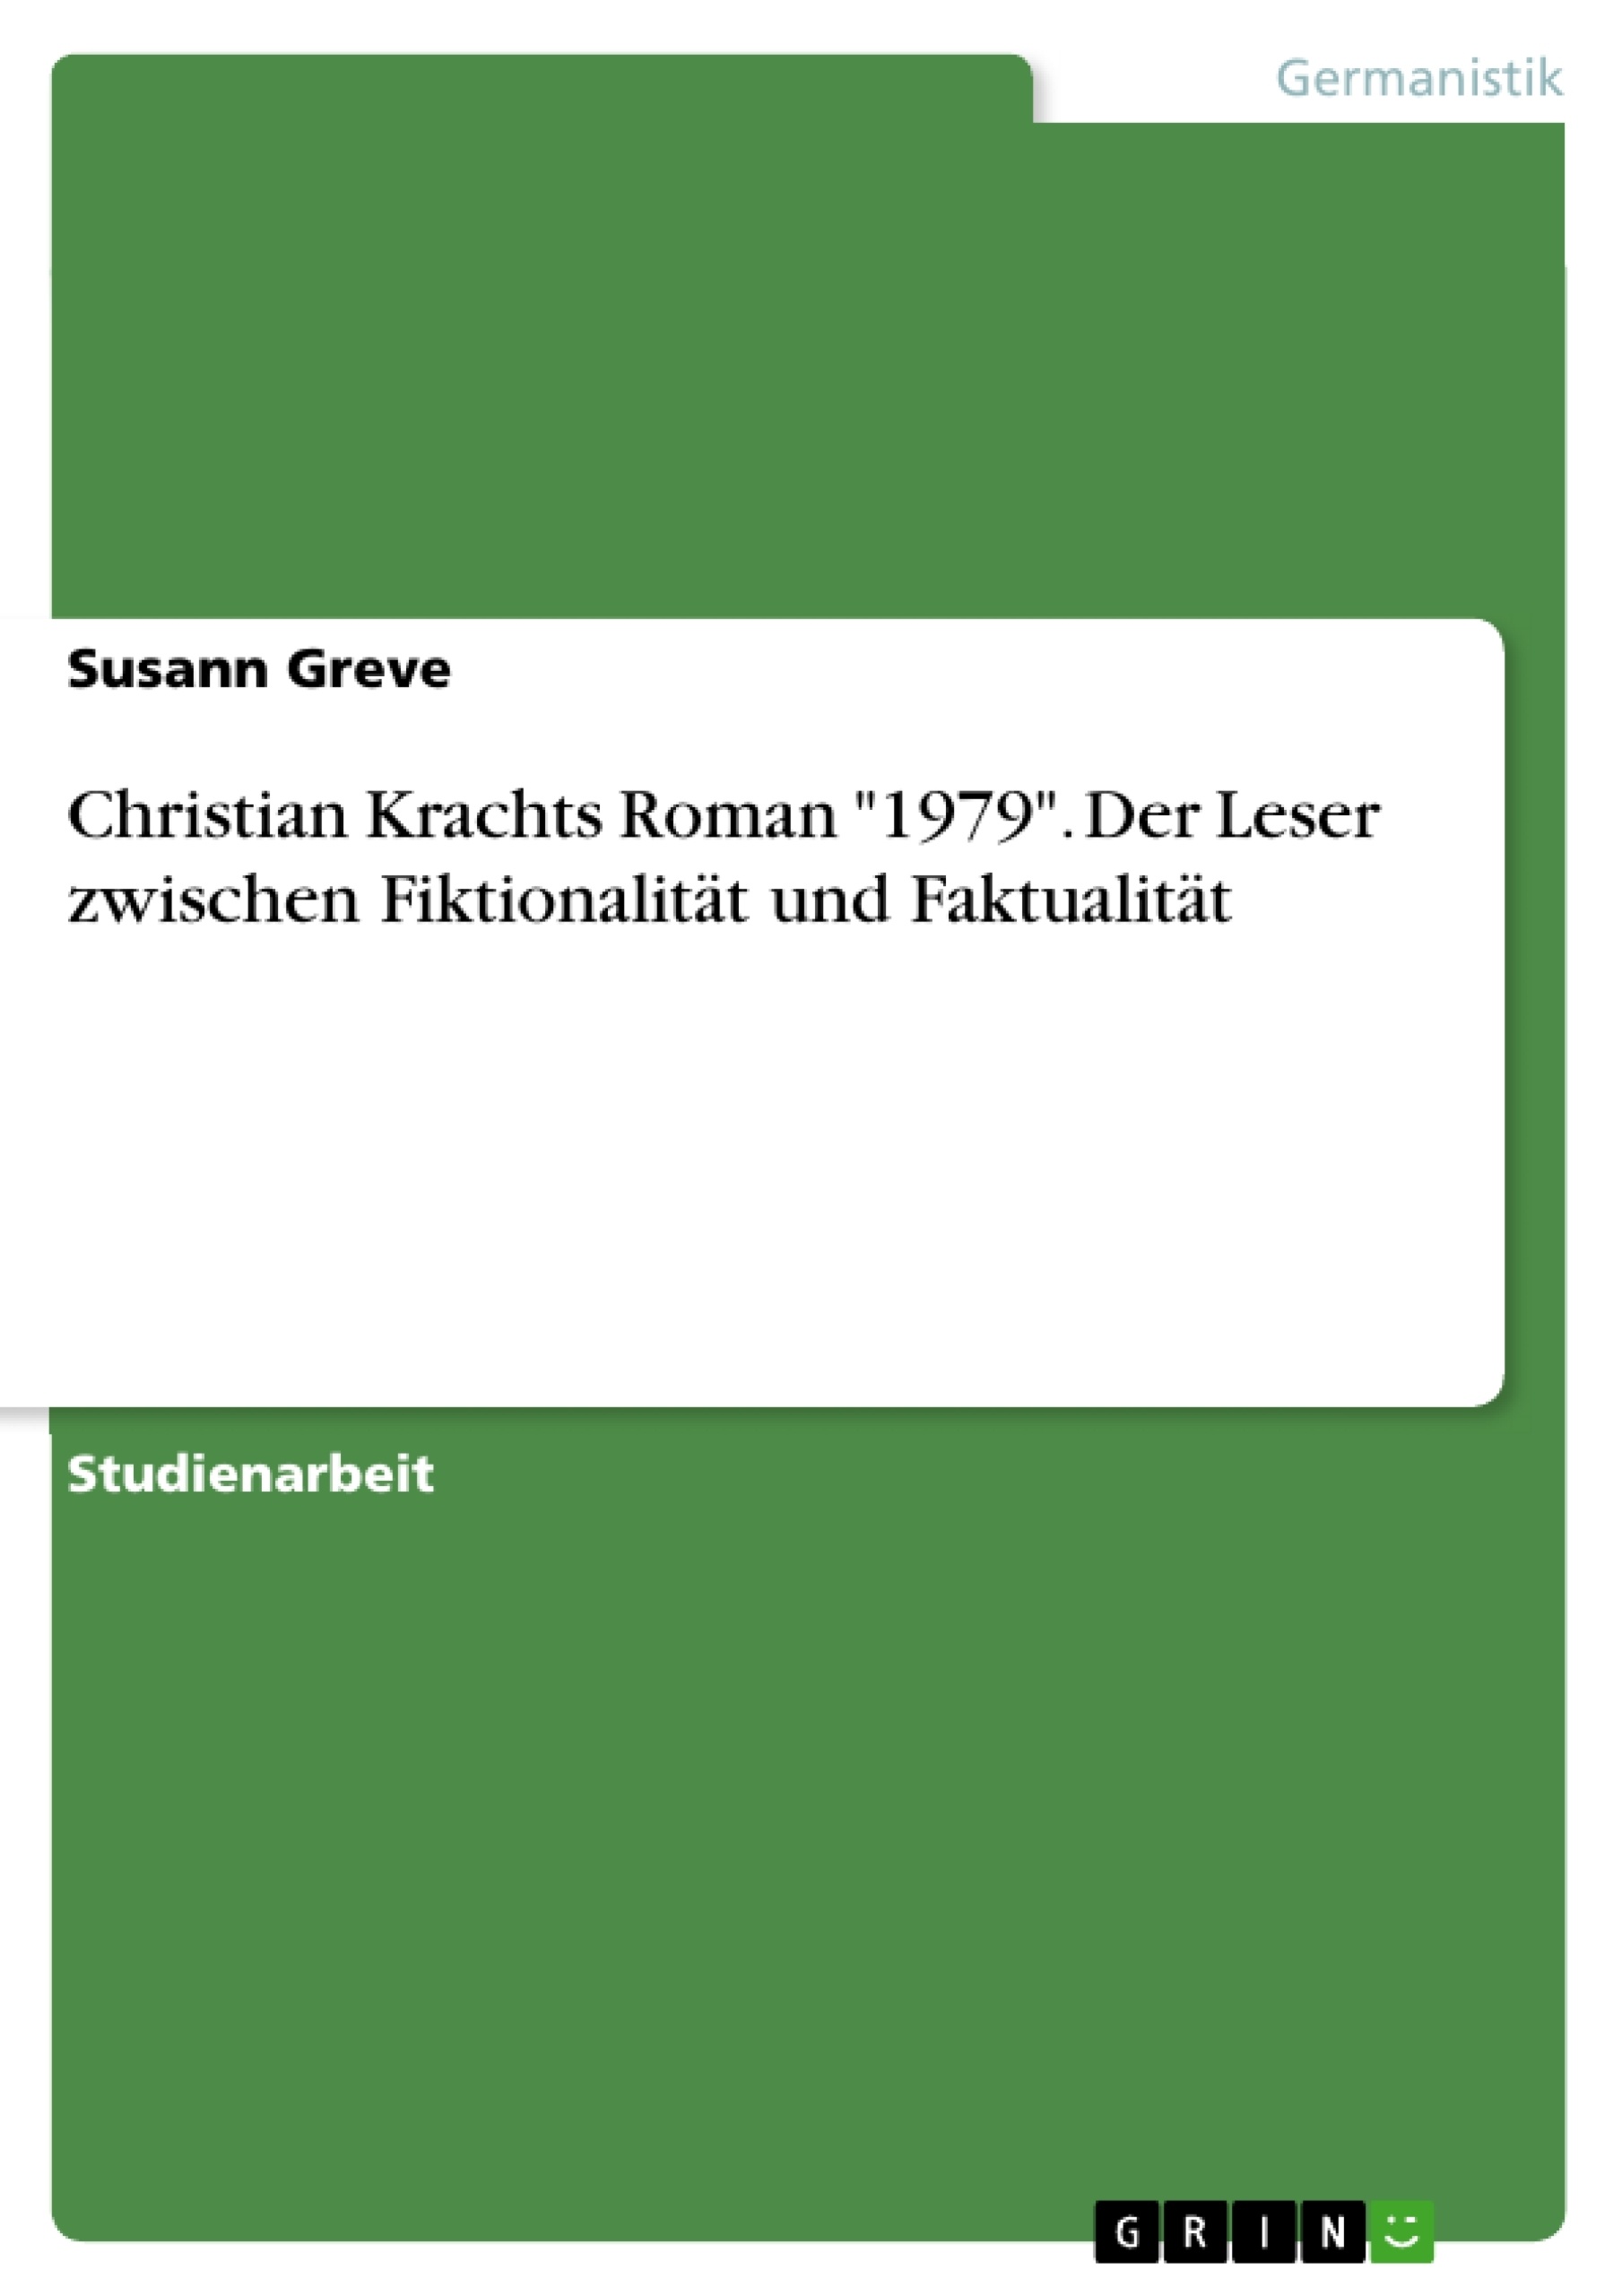 Title: Christian Krachts Roman "1979". Der Leser zwischen Fiktionalität und Faktualität